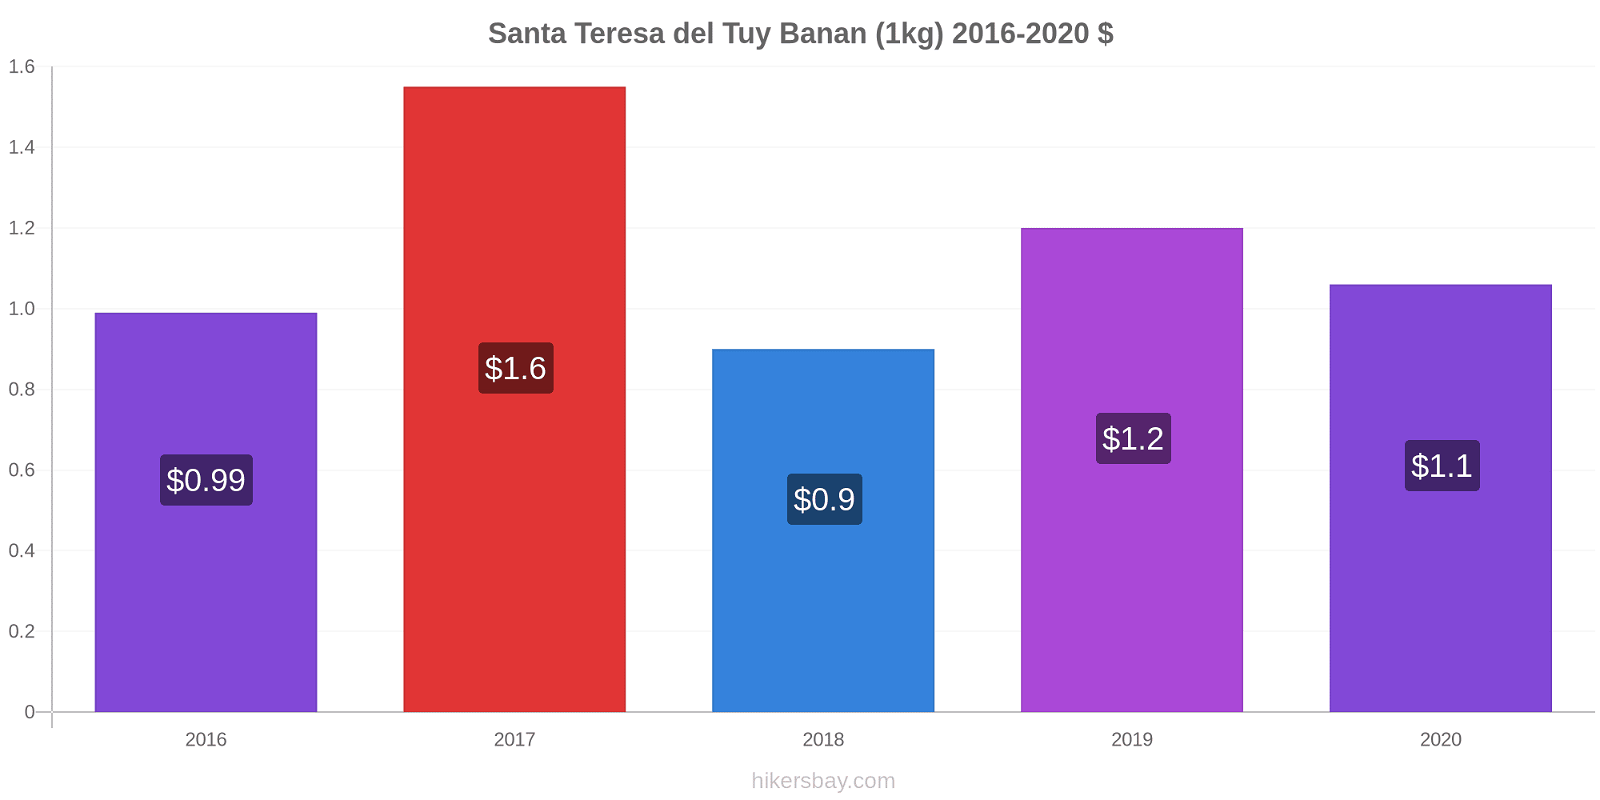 Santa Teresa del Tuy prisförändringar Banan (1kg) hikersbay.com